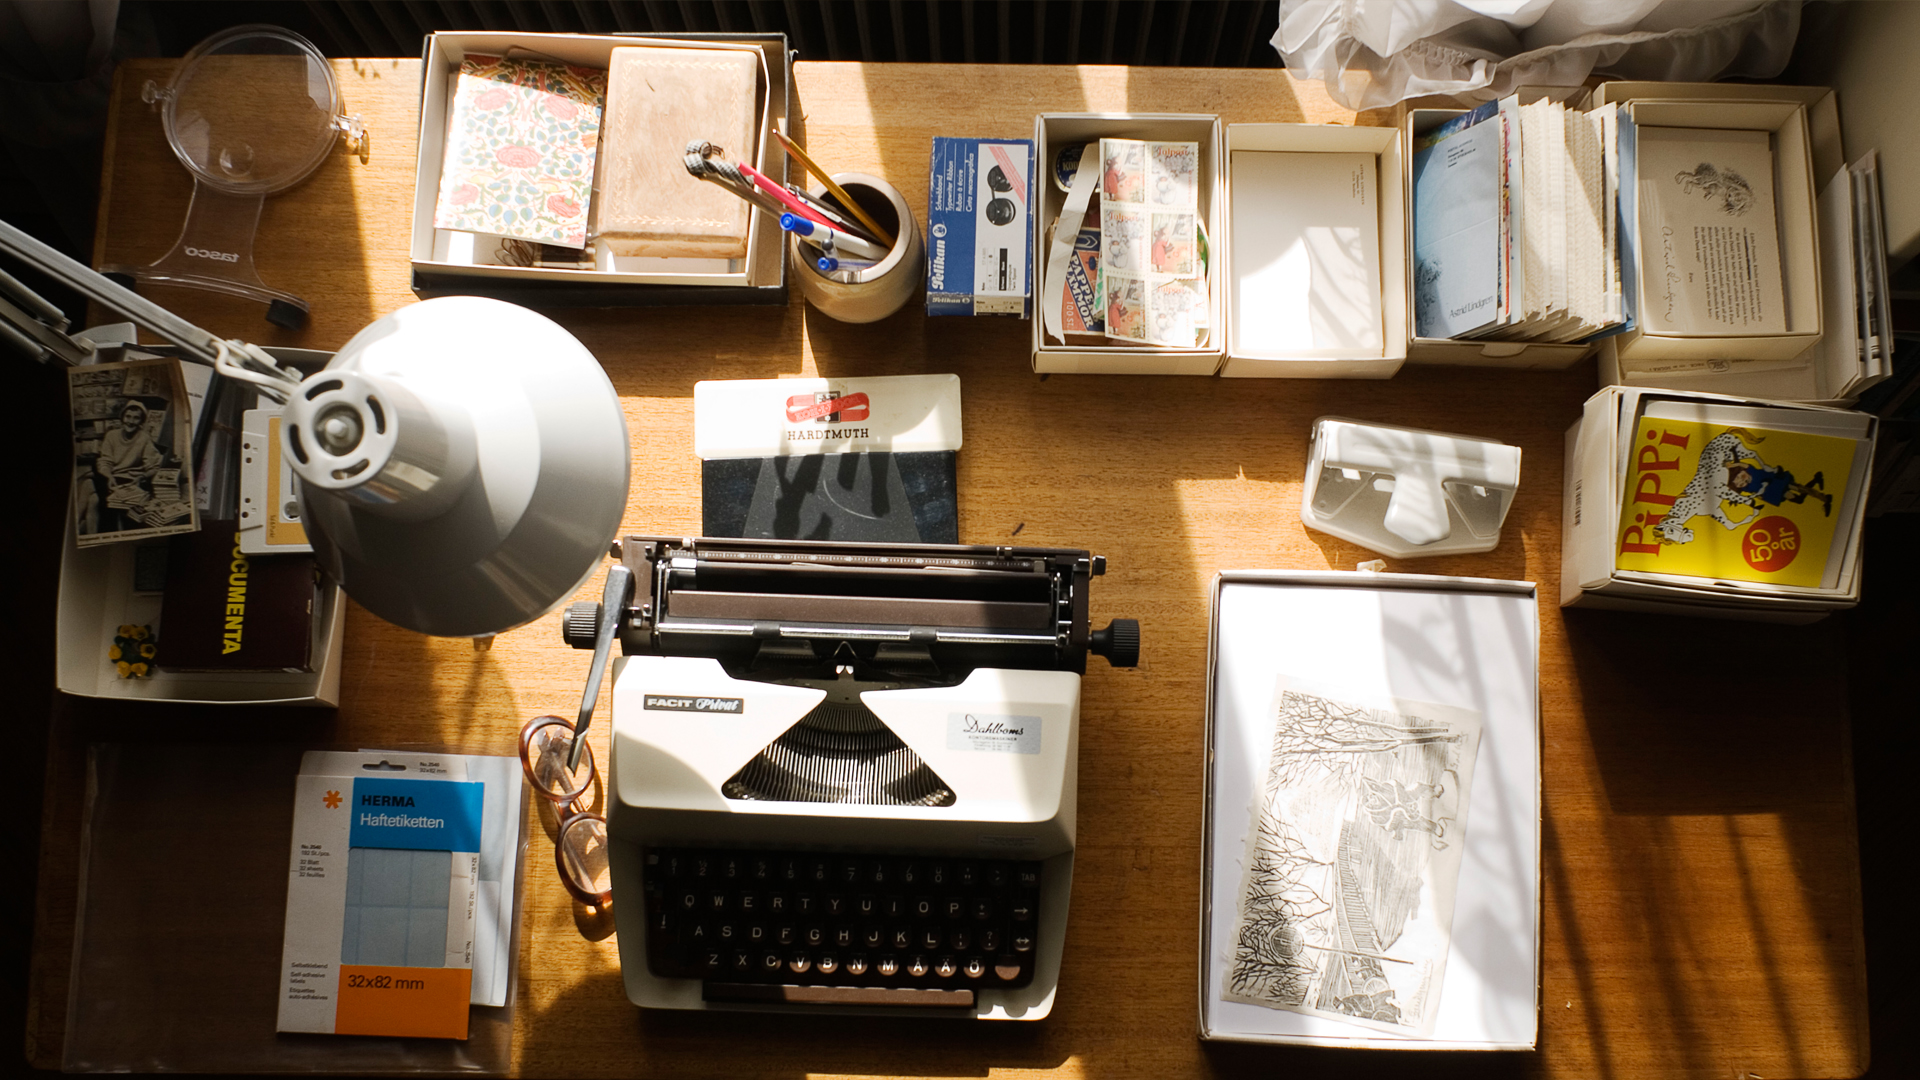 Ett skrivbord med olika saker. I mitten står en skrivmaskin och runt omkring finns små lådor med bland annat vykort och kassettband. Ett kort föreställer Pippi Långstrump och ett annat Astrid Lindgren.